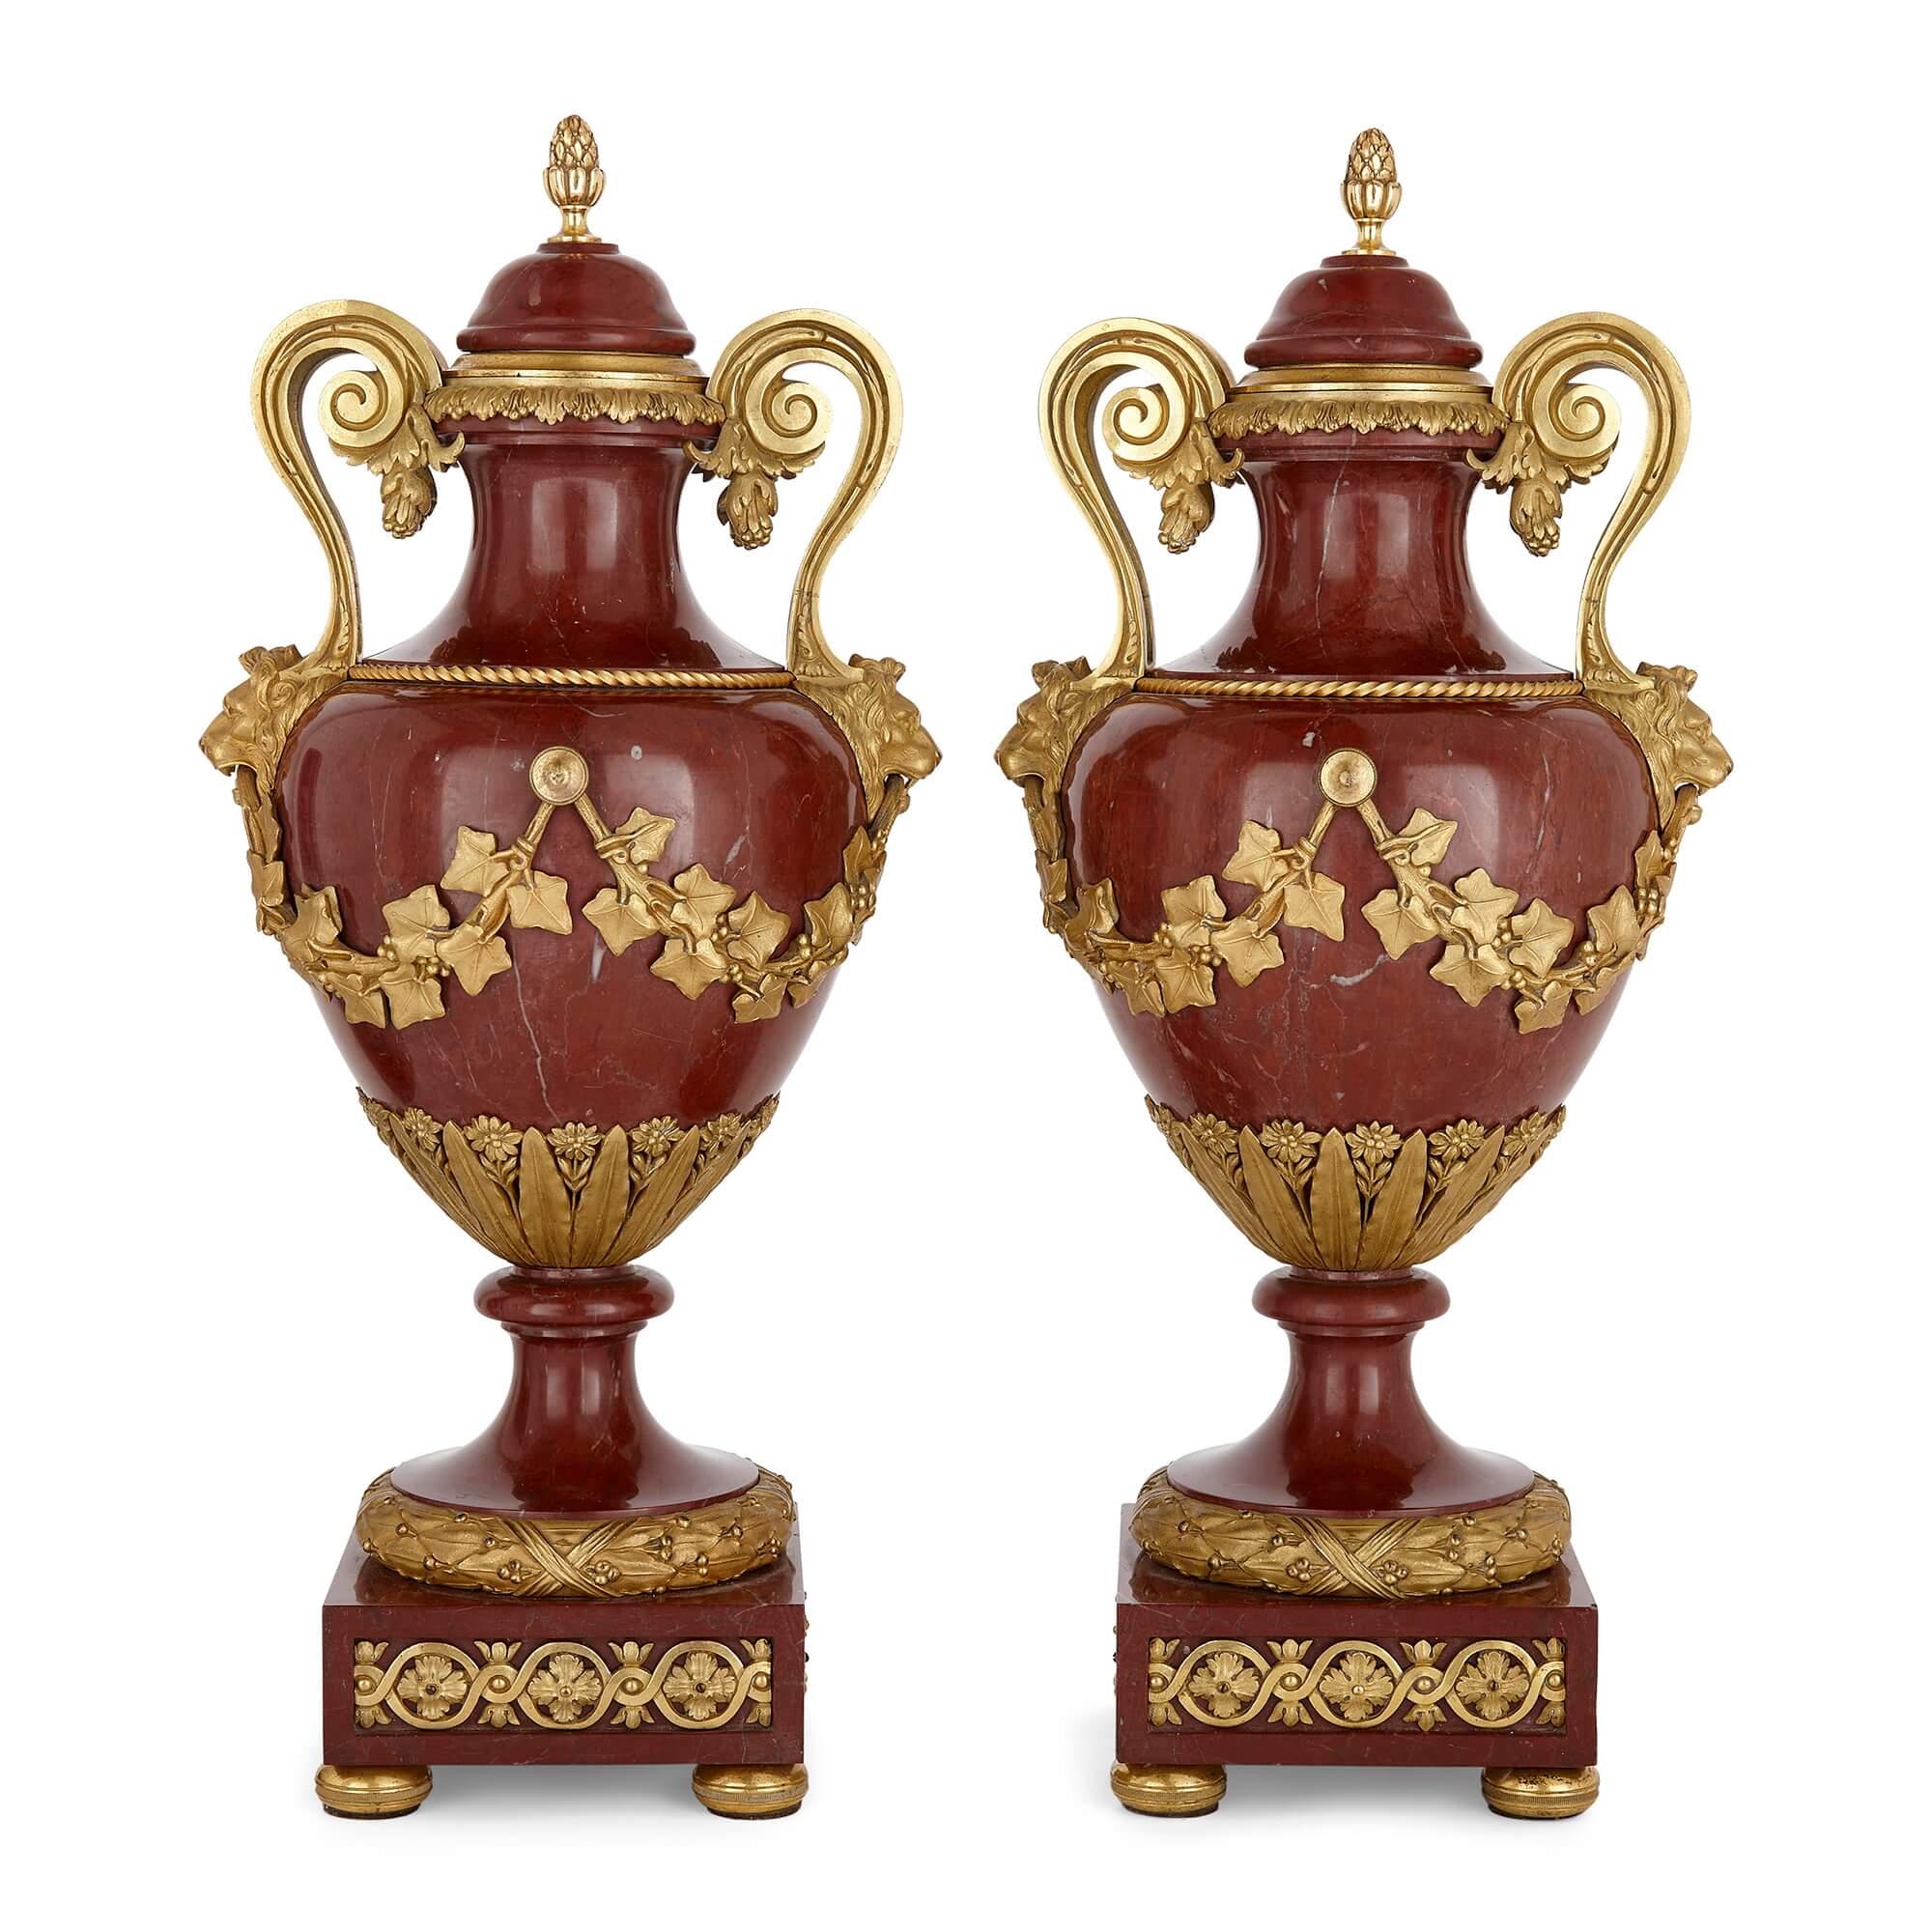 Paire de vases en marbre et bronze doré d'Henry Dasson
Français, 1890
Hauteur 44cm, largeur 21cm, profondeur 18cm

En 1890, le célèbre artisan français Henry Dasson (1825-1896) a créé cette paire de vases qui illustre à la fois la grandeur et la